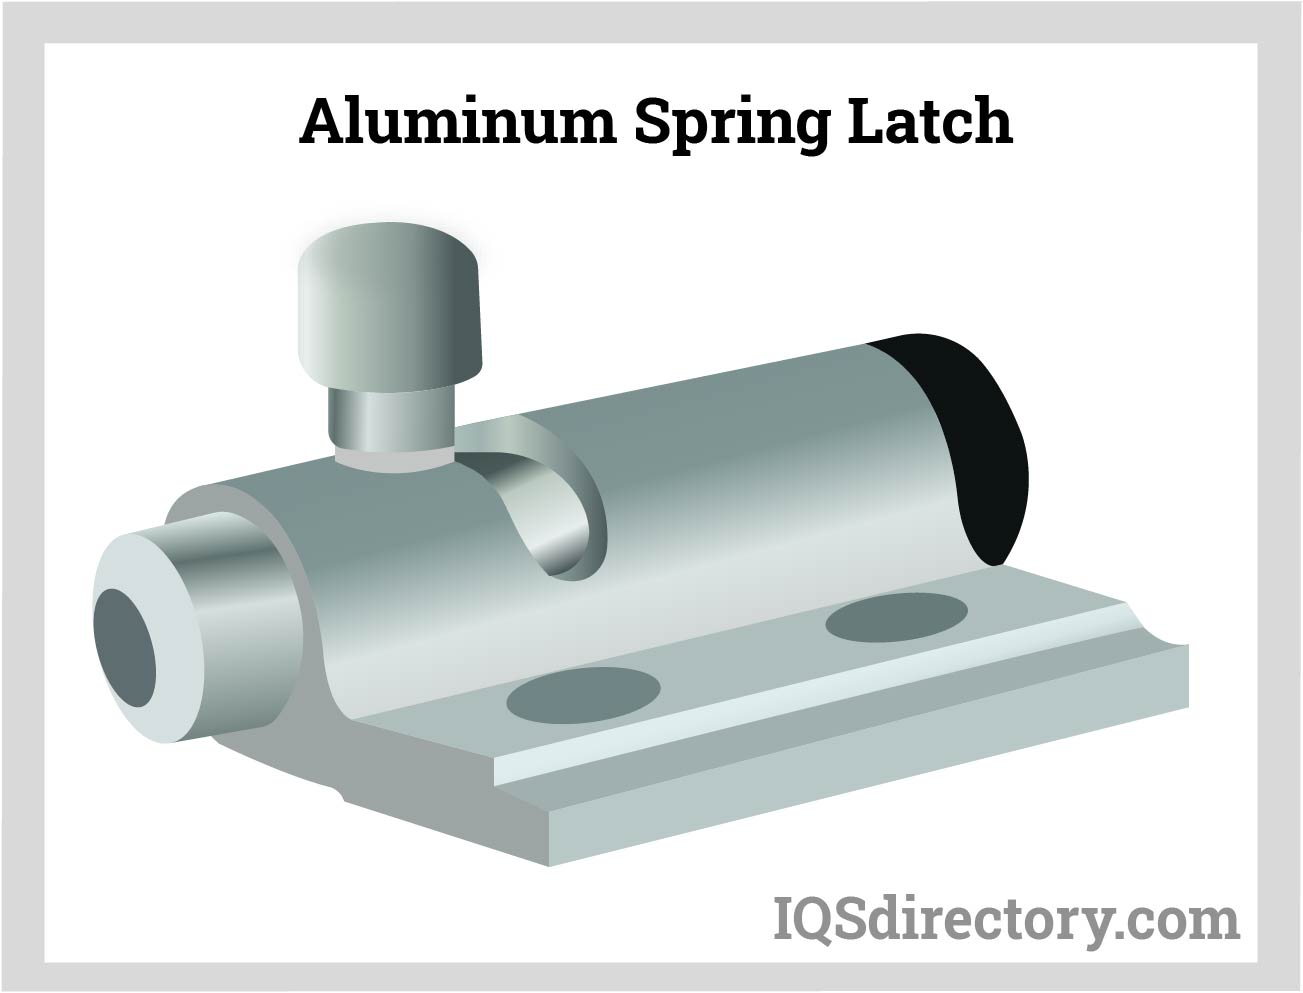 Aluminum Spring Latch